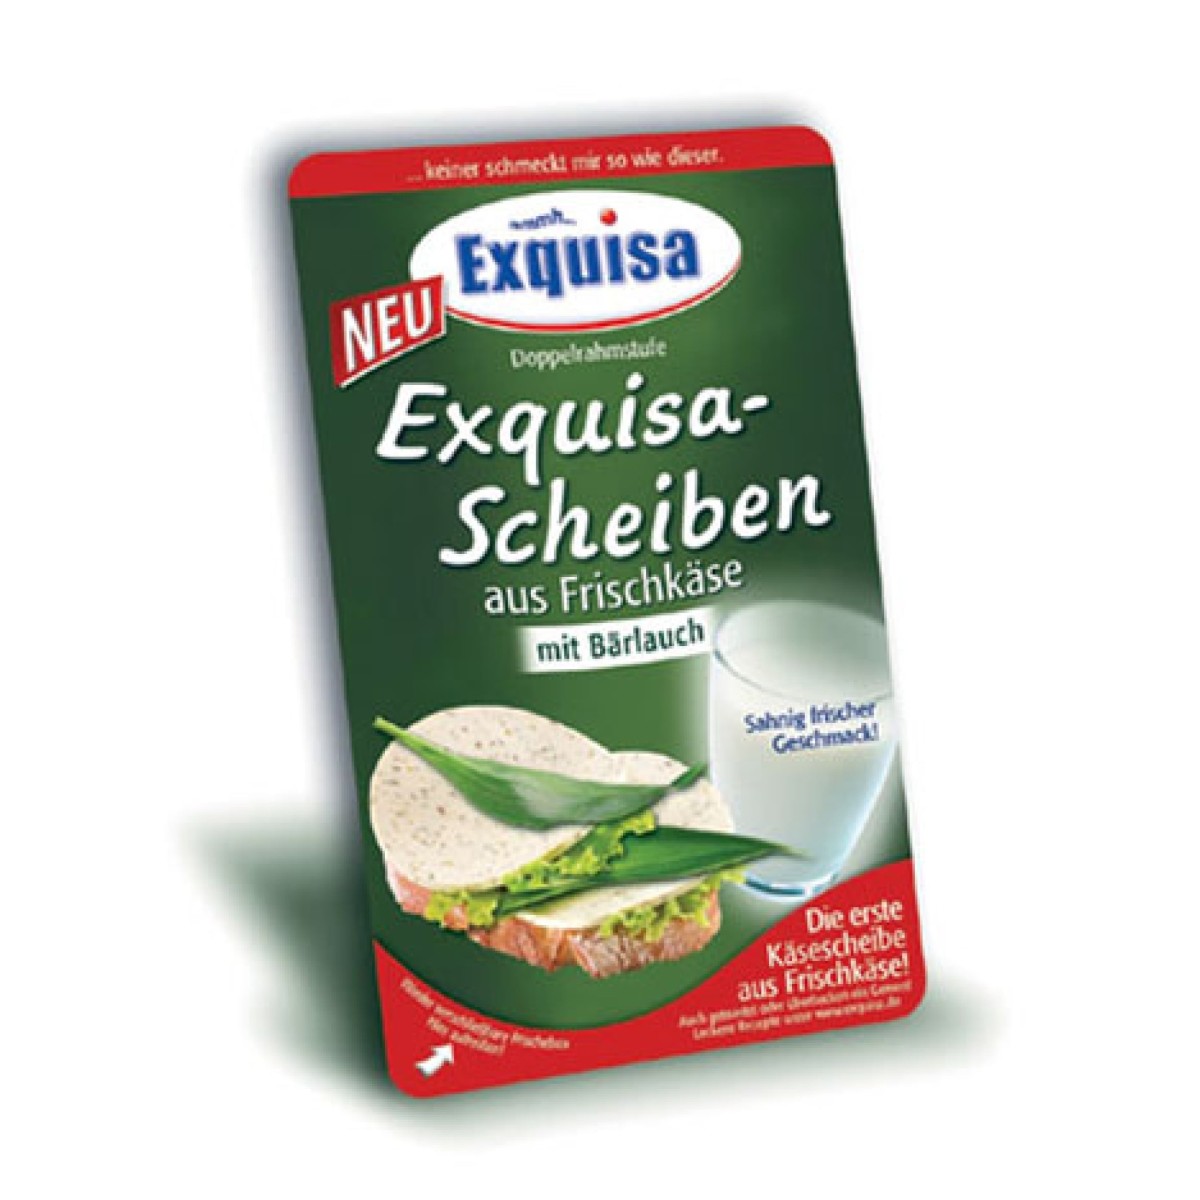 Exquisa-Scheiben auf Frischkäse mit Bärlauch → REGAL